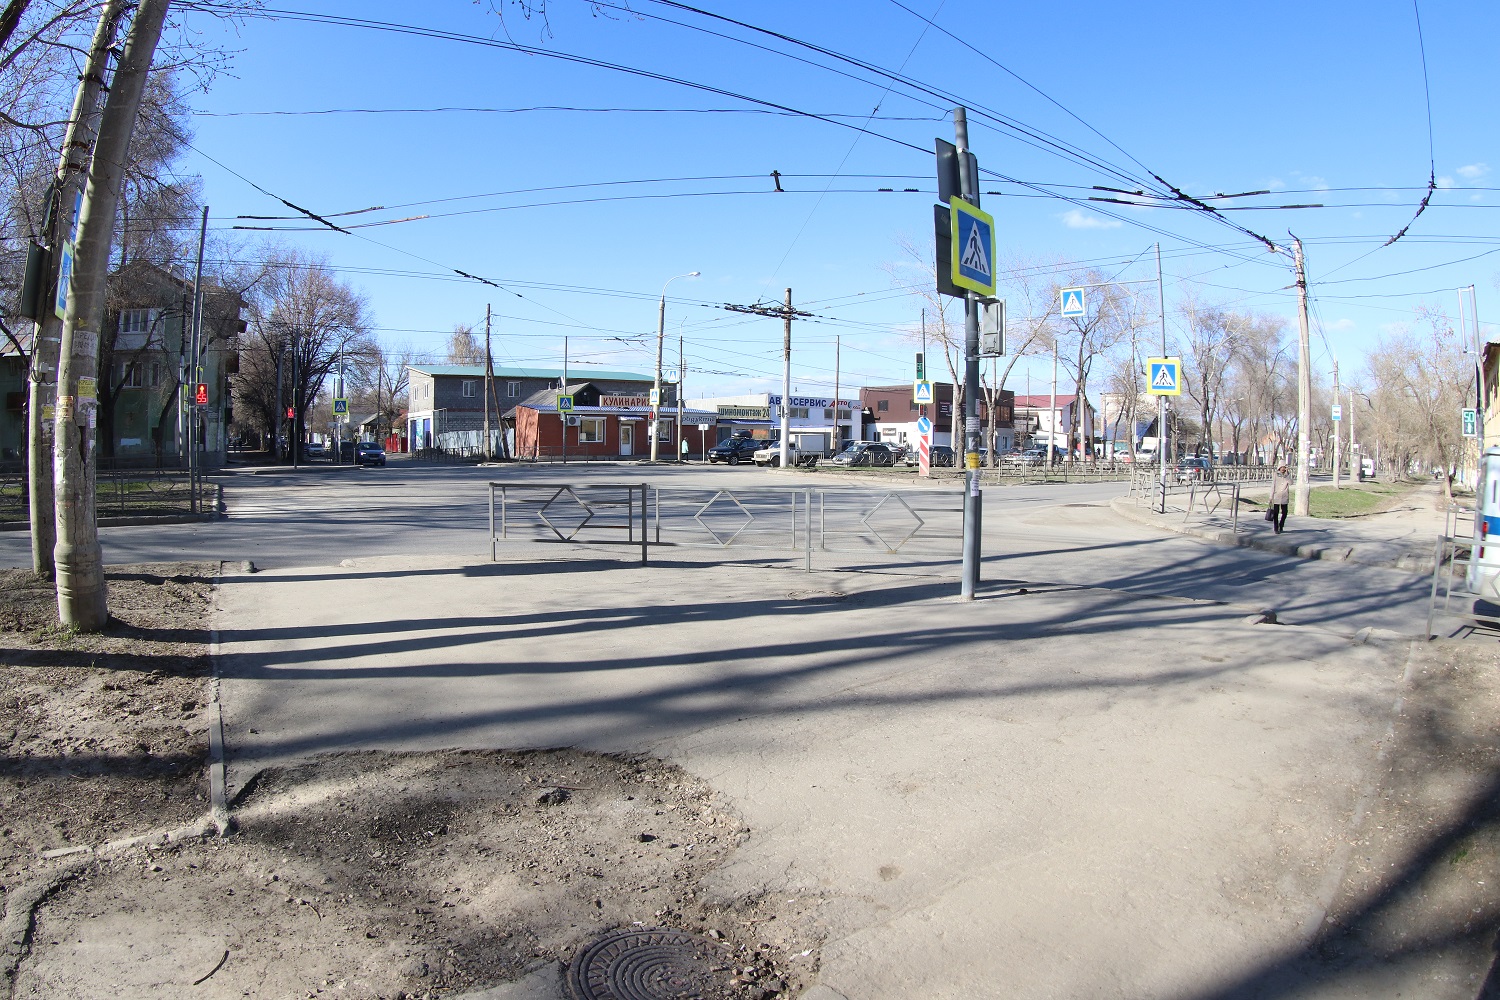 Улица Вольская — одна из самых опасных в Самаре для пешеходов, несмотря на относительно небольшой поток транспорта и многочисленные ограждения и знаки